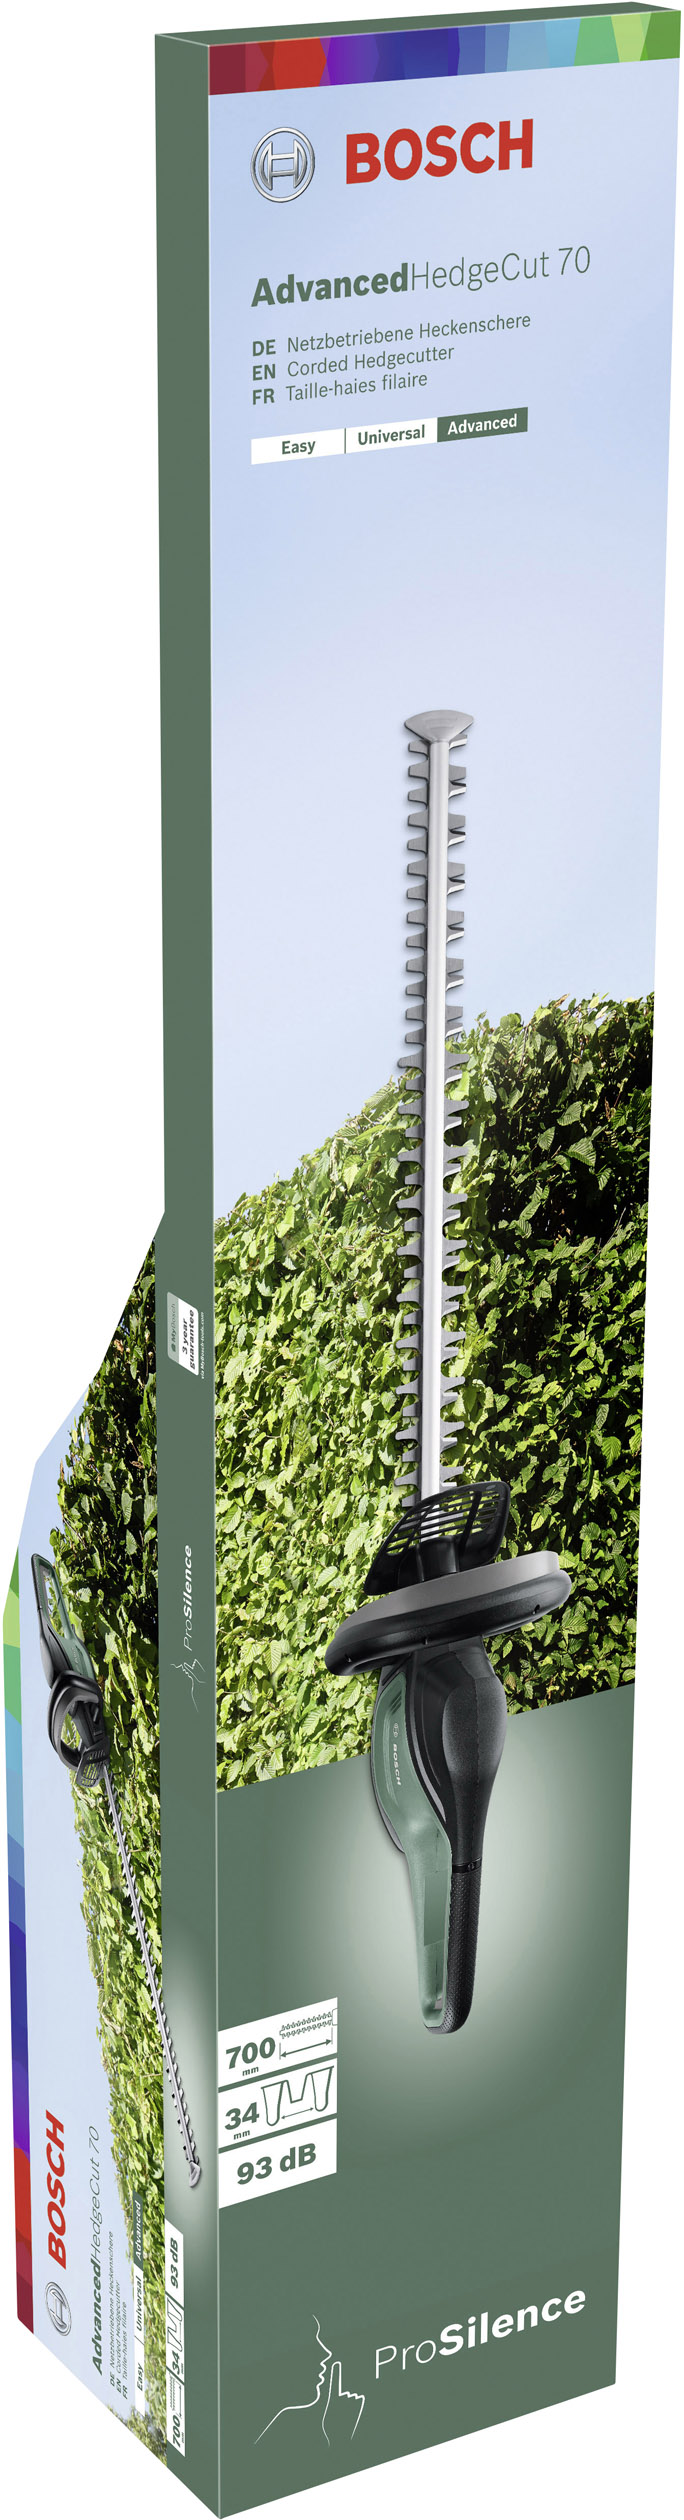 Bosch Home and Garden AdvancedHedgecut 70, B-Ware Elektro Heckenschere mit Schutzbügel 500 W 700 mm